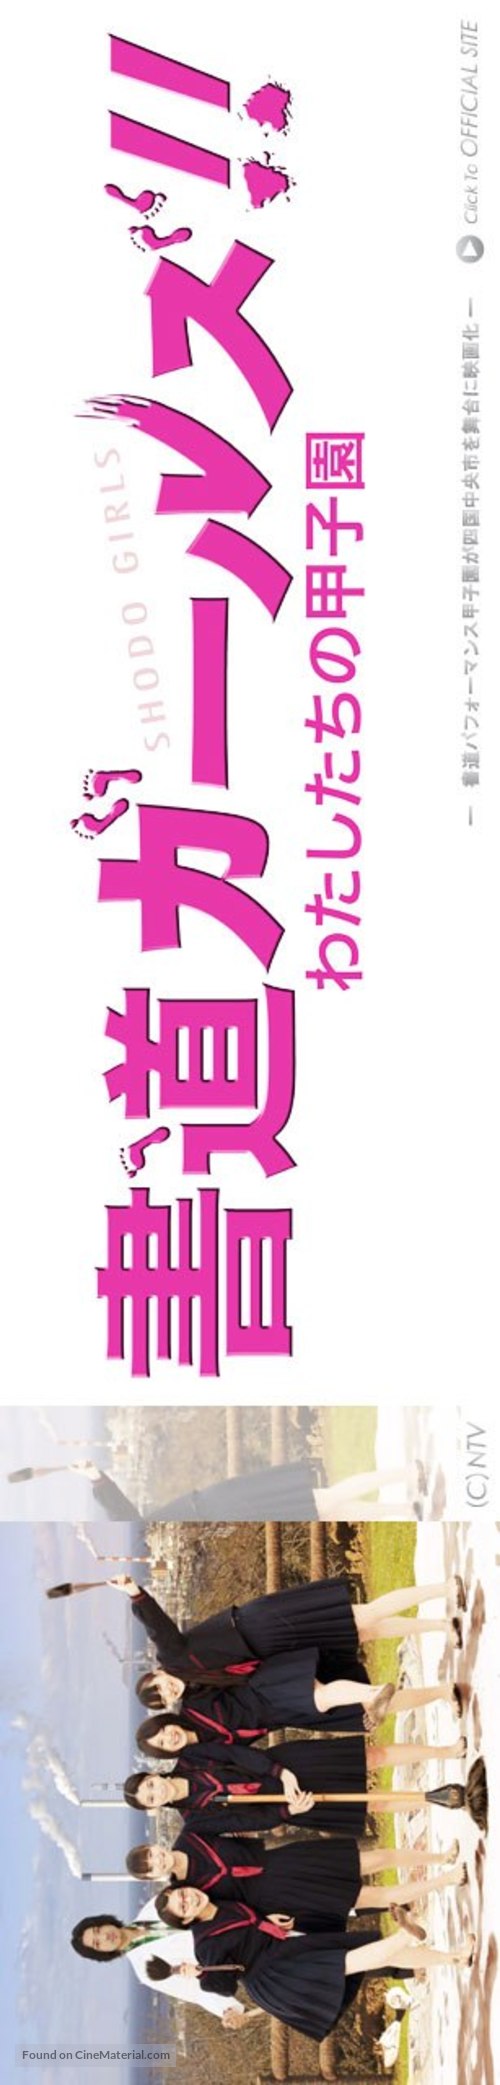 Shod&ocirc; g&acirc;ruzu!!: Watashitachi no k&ocirc;shien - Japanese Movie Poster